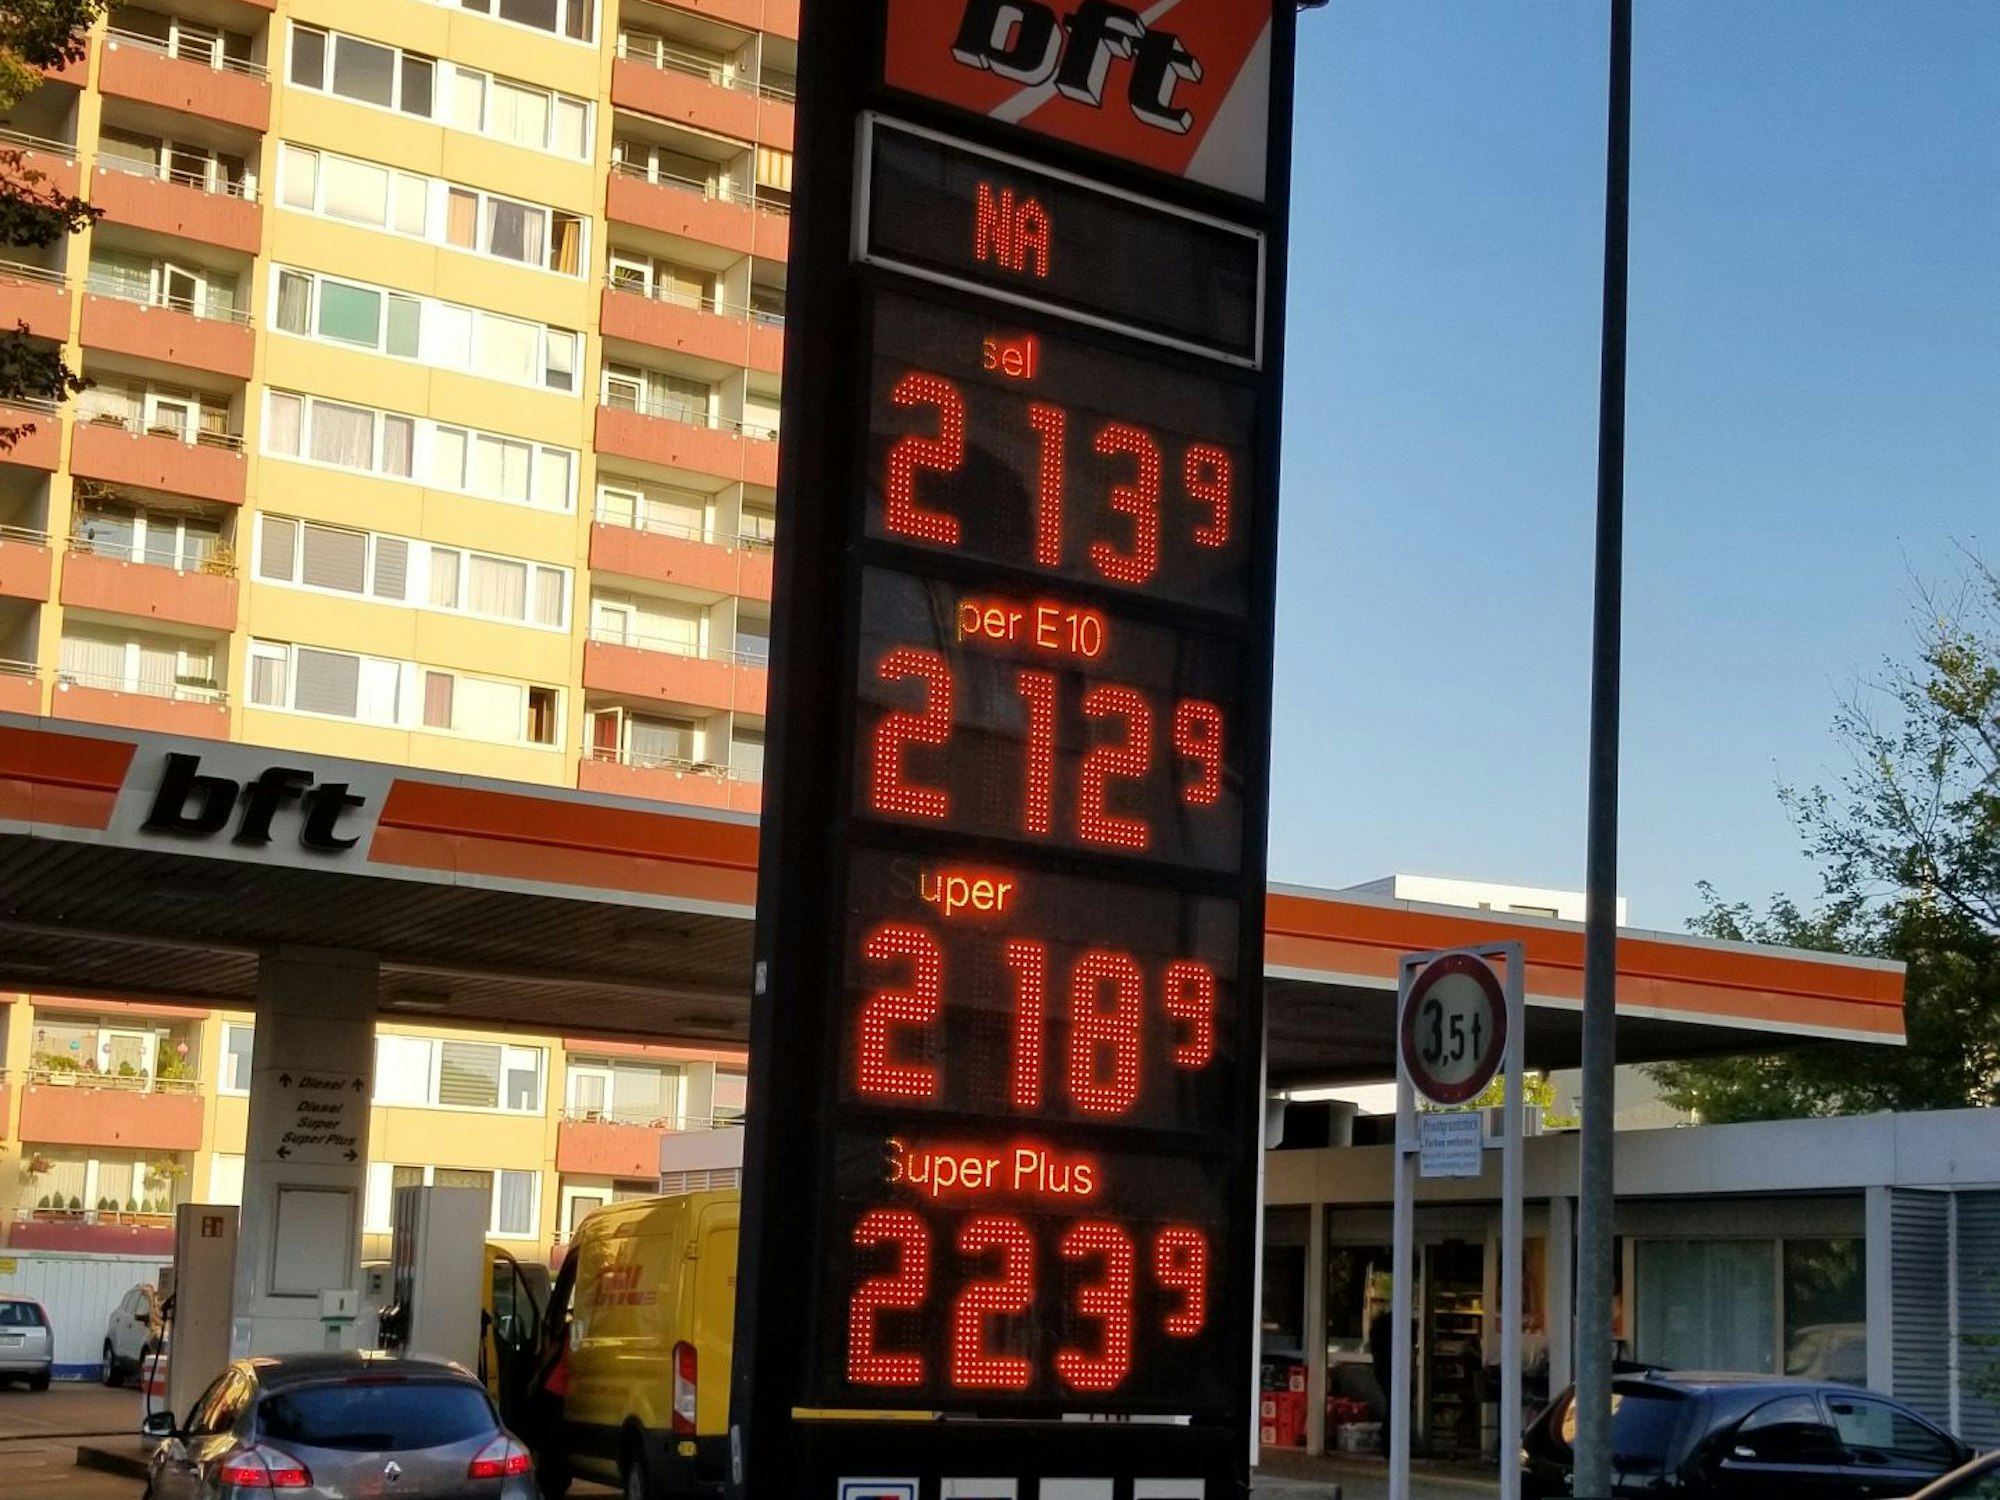 Die bft-Tankstelle am Donnerstagmorgen (1. September 2022). Um 7.50 Uhr lag der E10-Spritpreis bei 2,13 Euro.